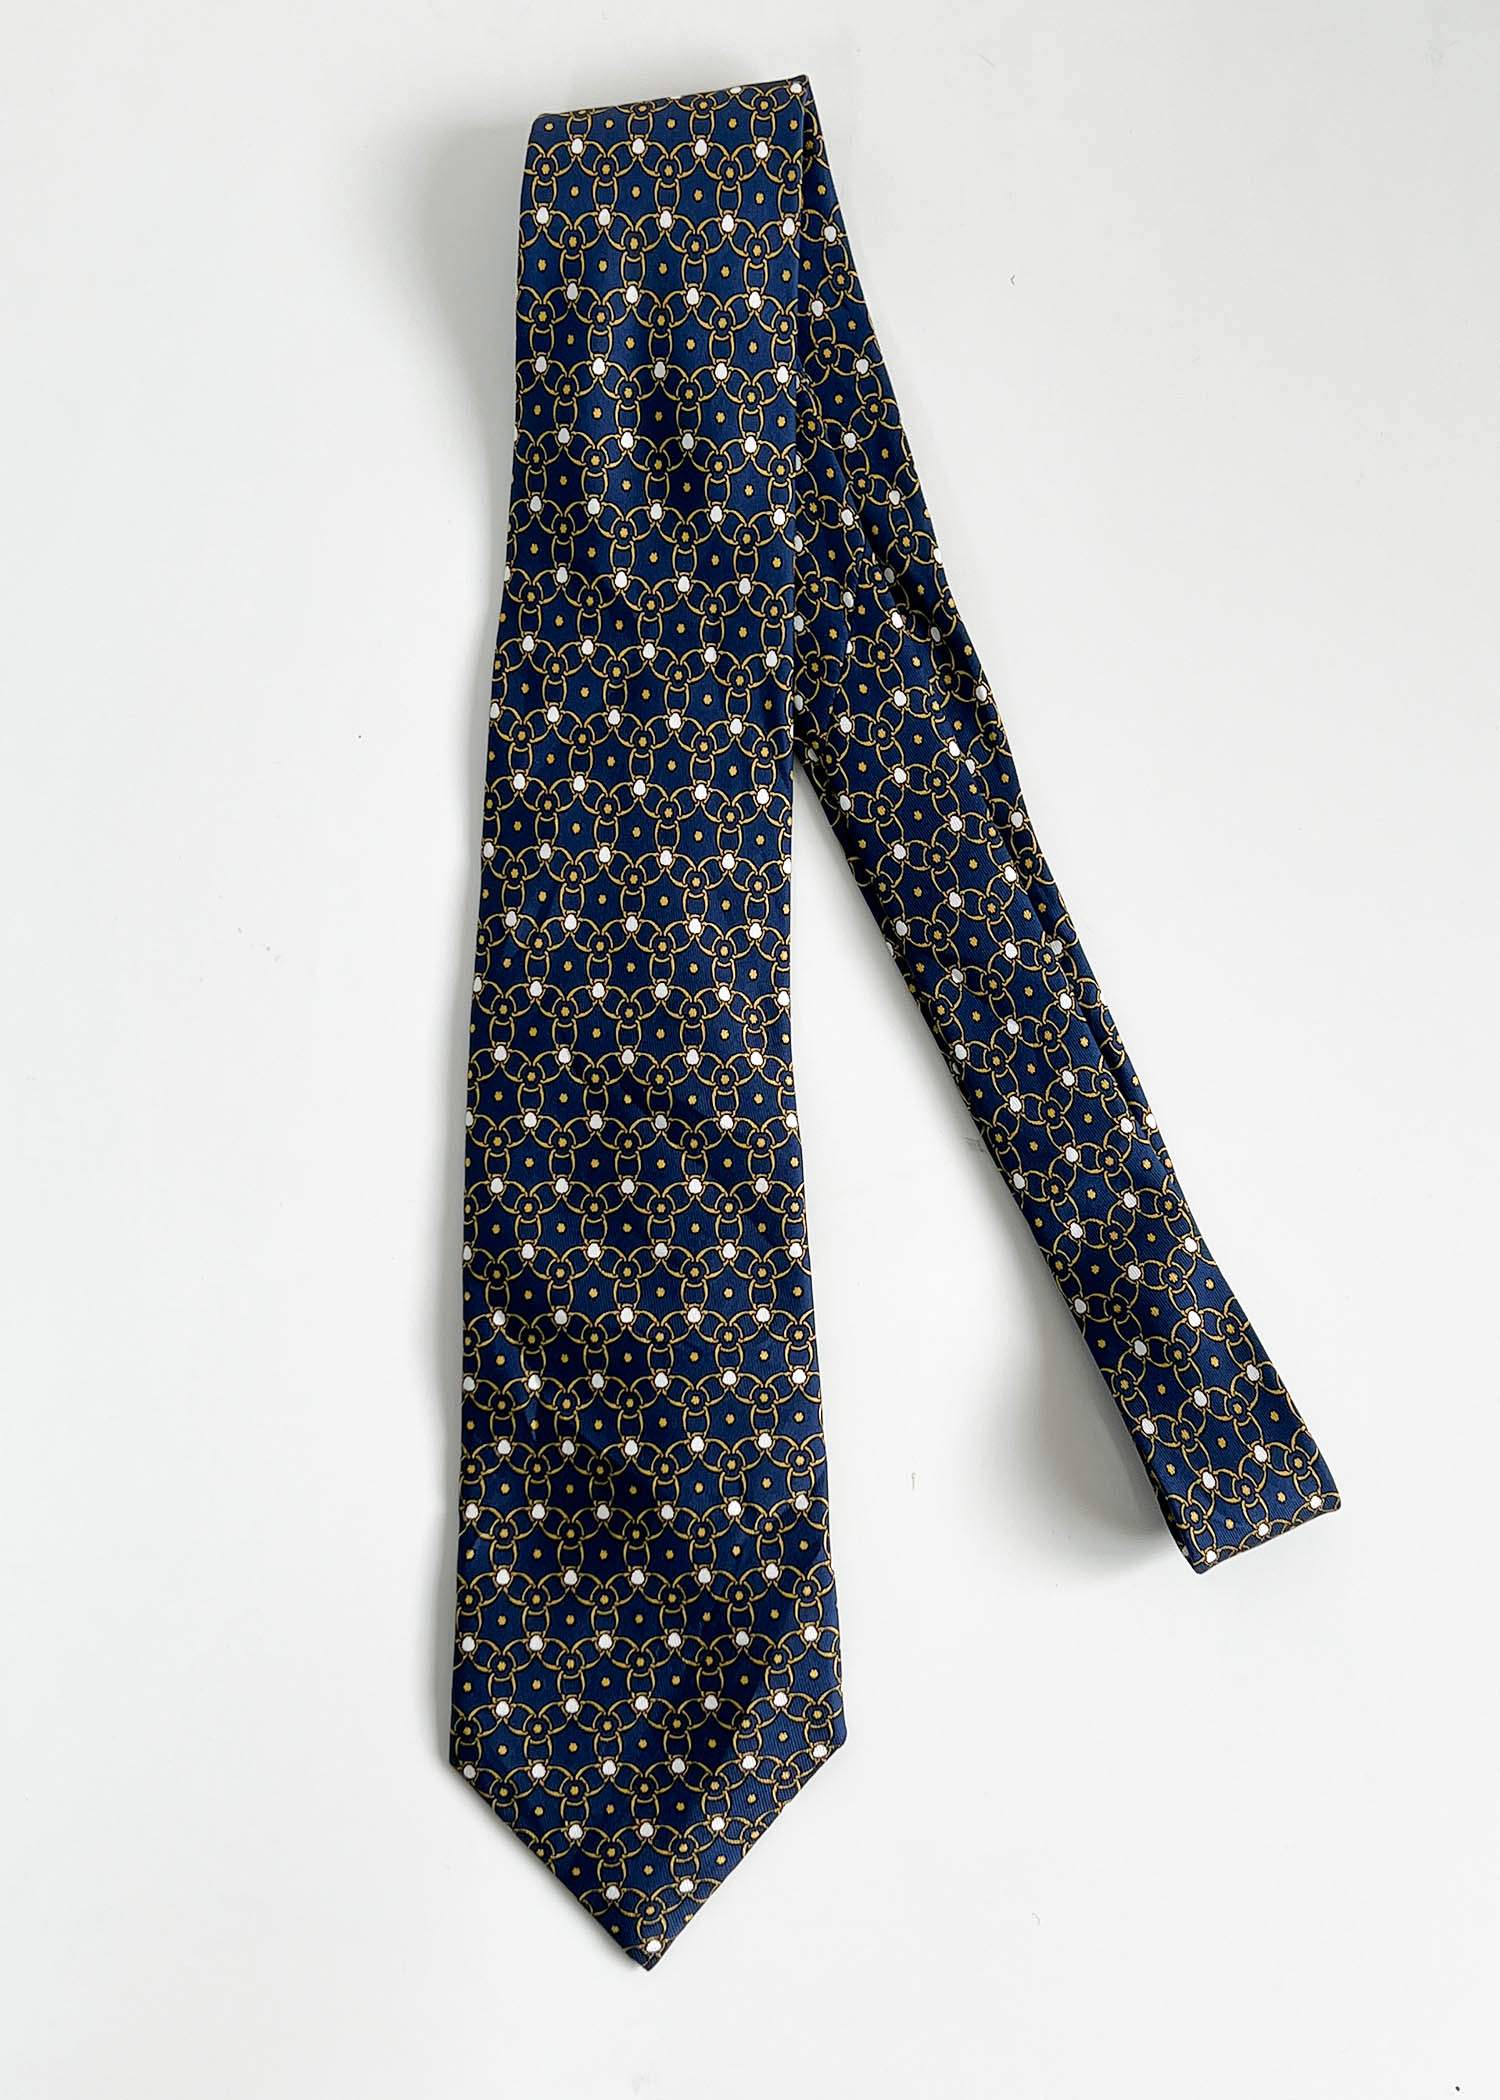 HERMES pattern silk tie